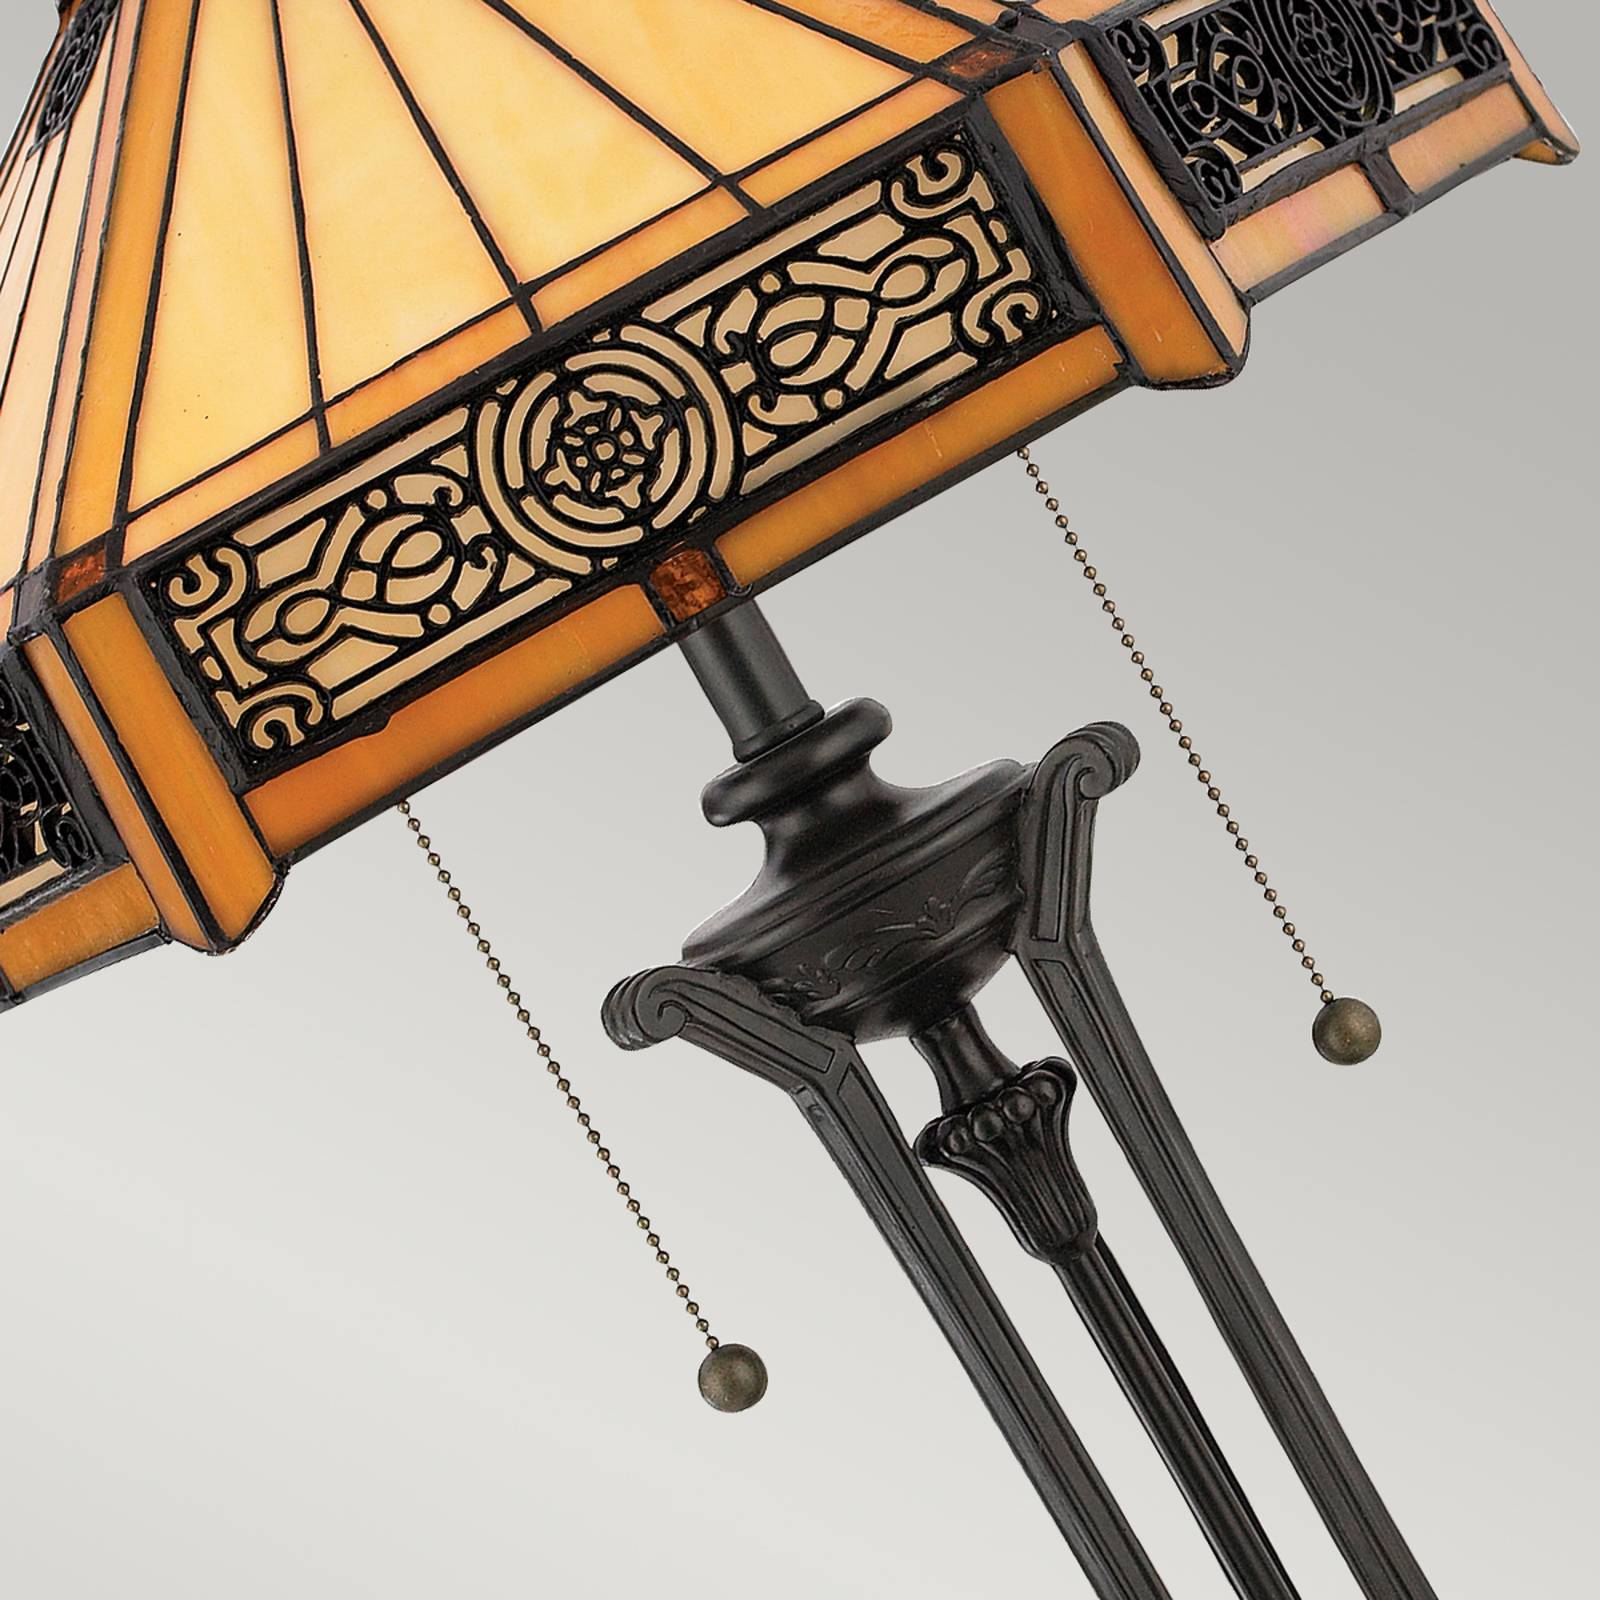 QUOIZEL Stolní lampa Indus ve stylu Tiffany